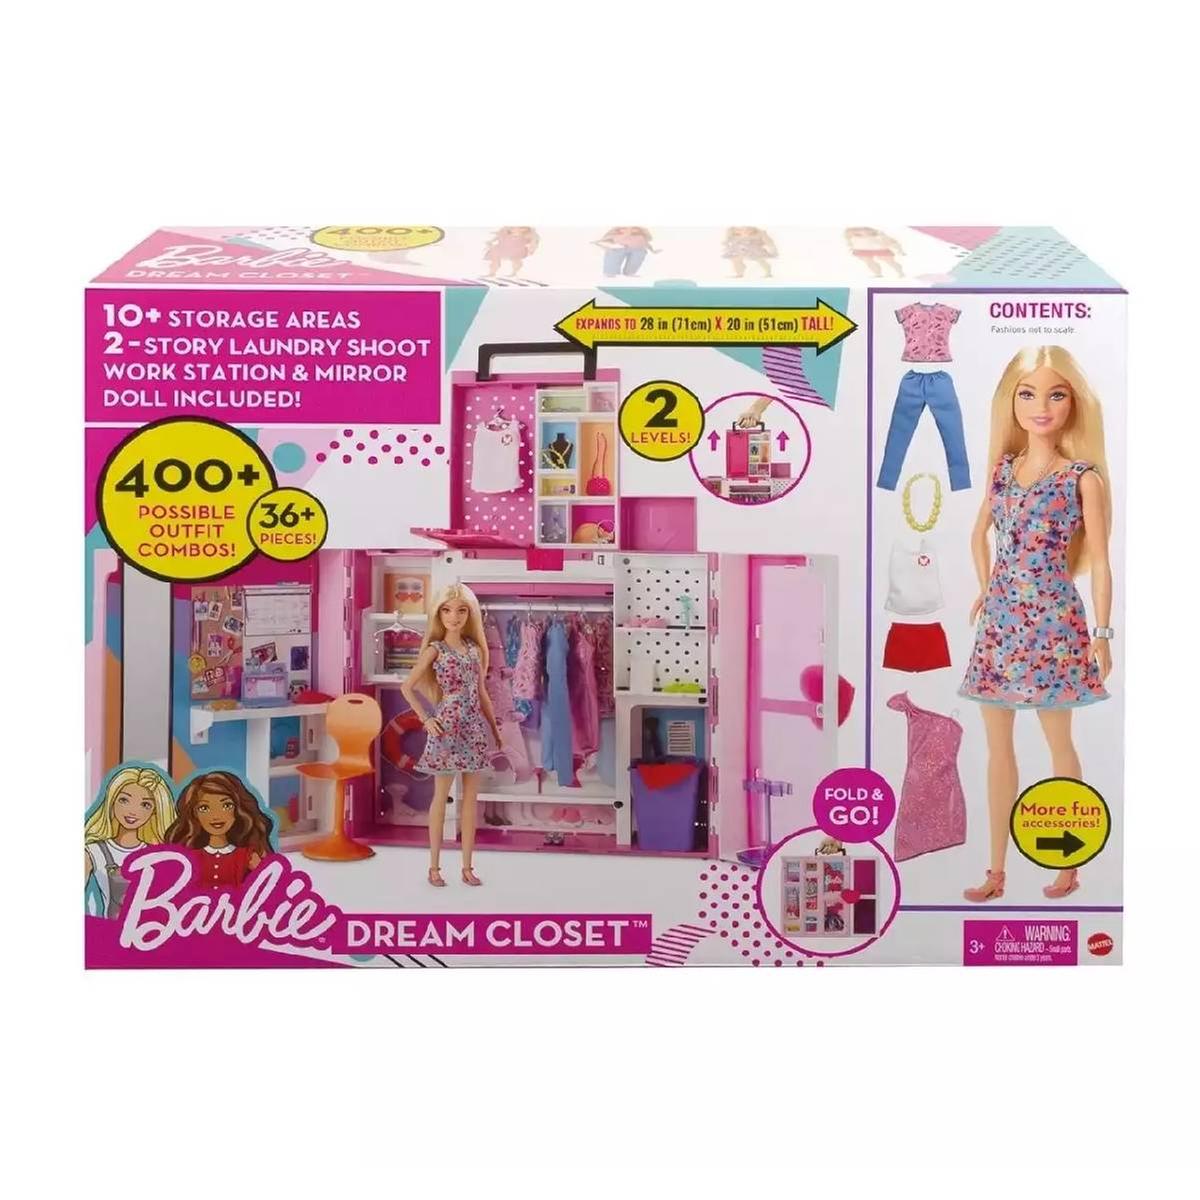 Roupa De Barbie Guarda Vidas Original Mattel. Com Acessórios